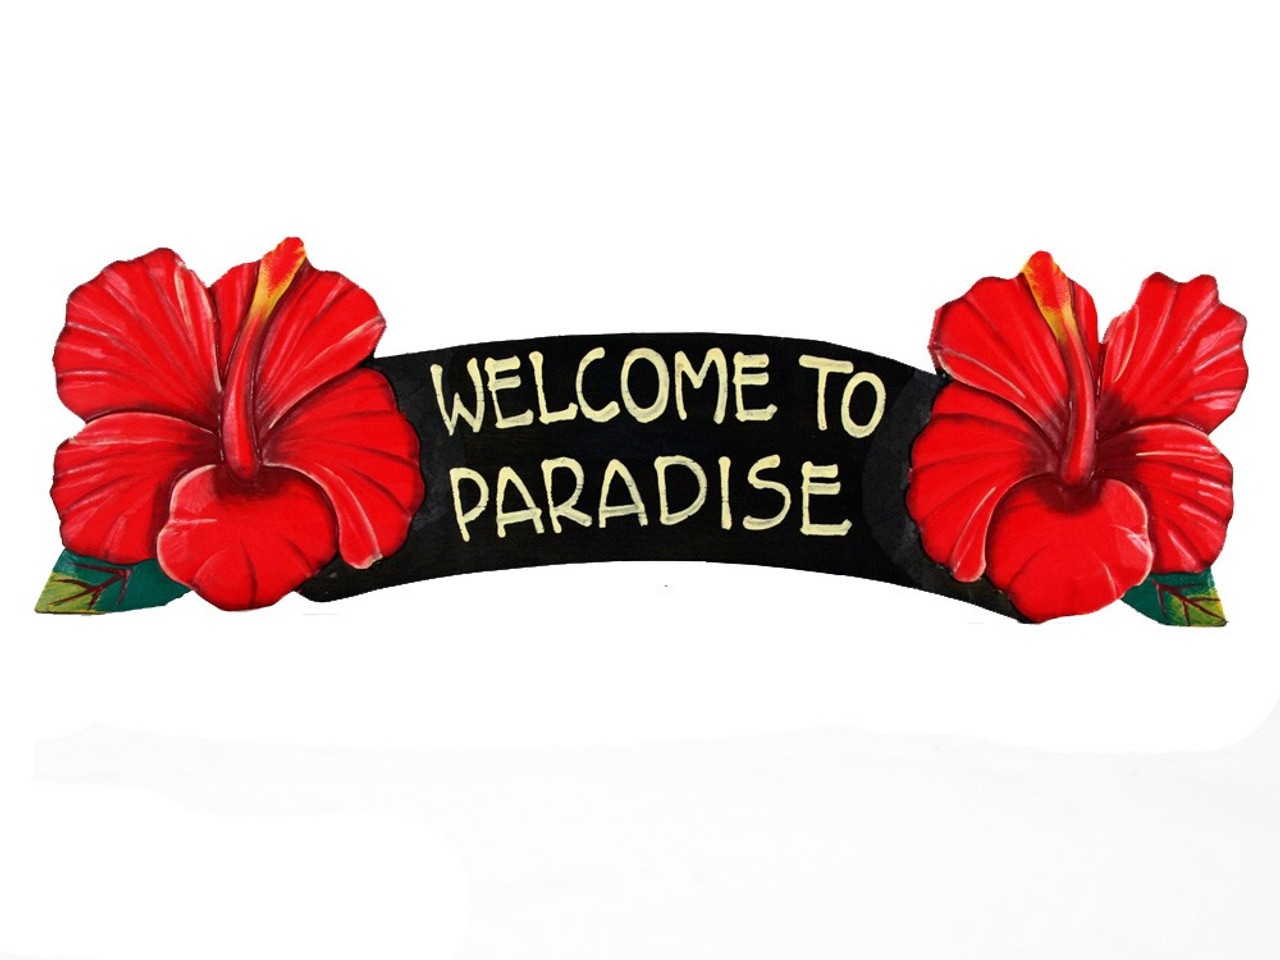 Welcome to paradise обзор. Welcome to Paradise. Welcome to Paradise надпись. Welcome to Paradise табличка. Велком ту Парадайс.